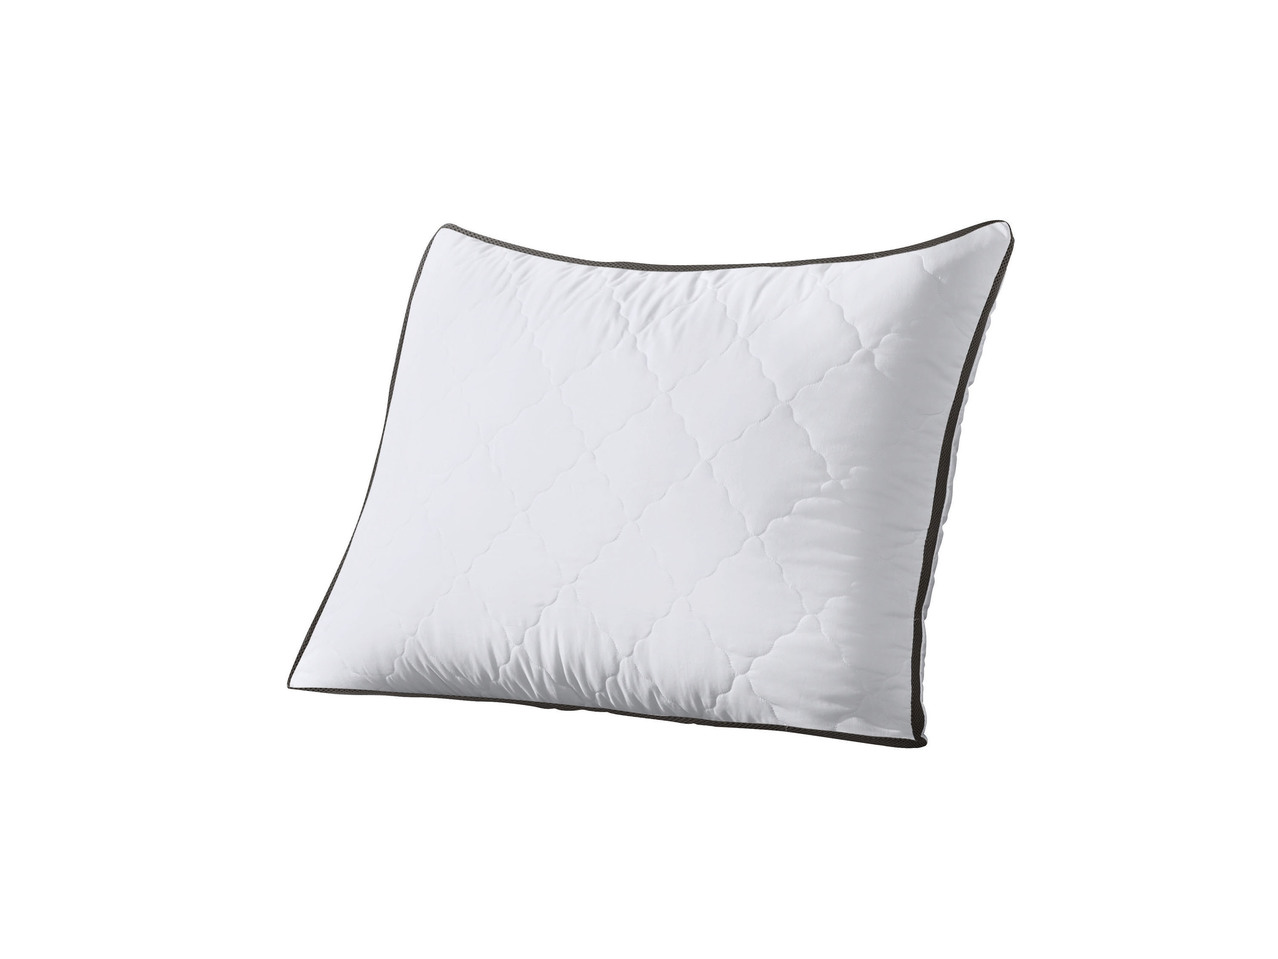 Pillow, 50x80cm